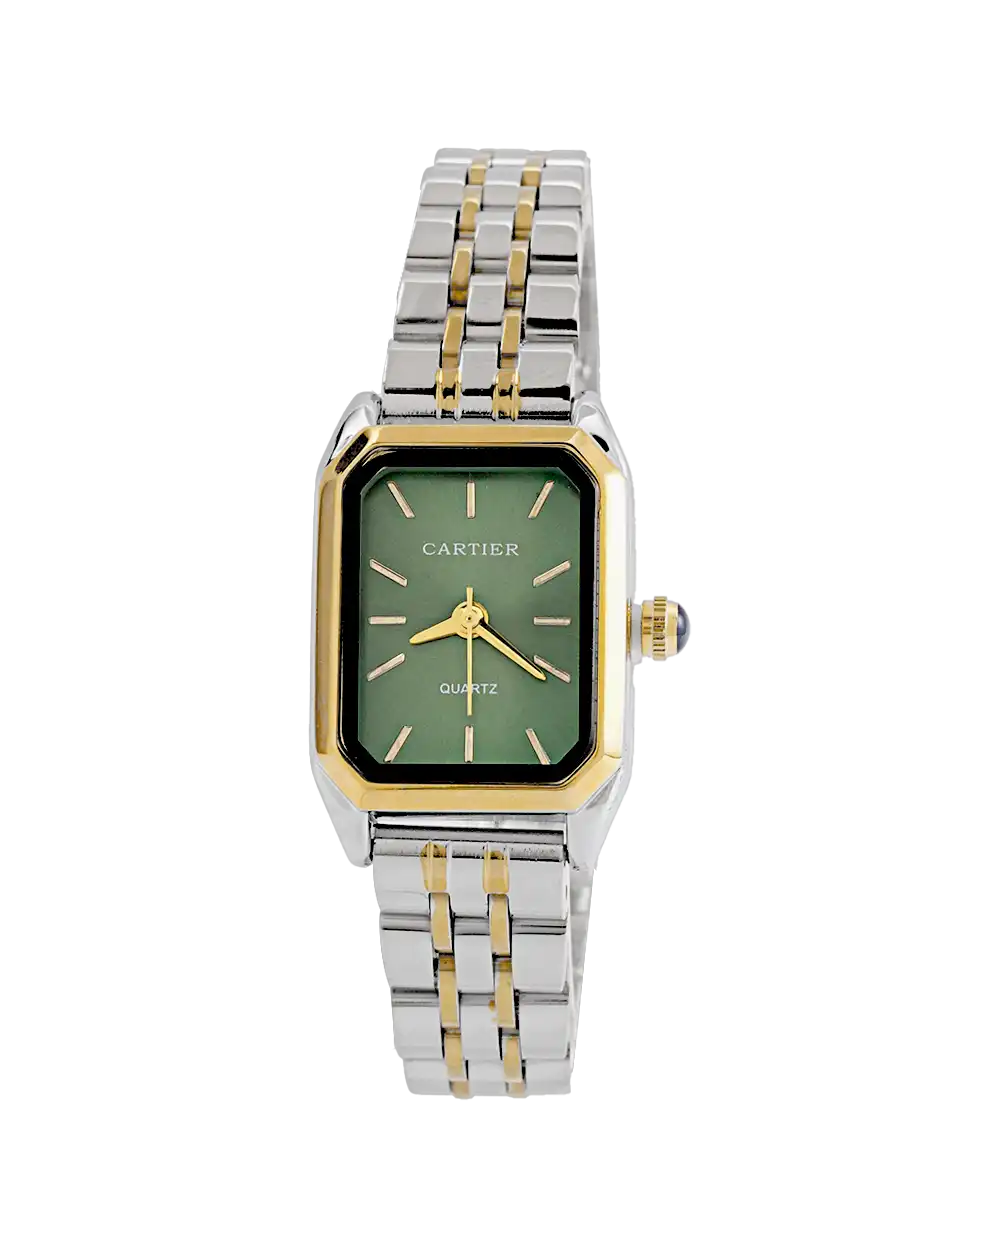 خرید ساعت مچی زنانه کارتیه CARTIER مدل 1746 | کارتیر صفحه سبز با بهترین قیمت به همراه ارسال رایگان به سراسر ایران و جعبه ی ساعت